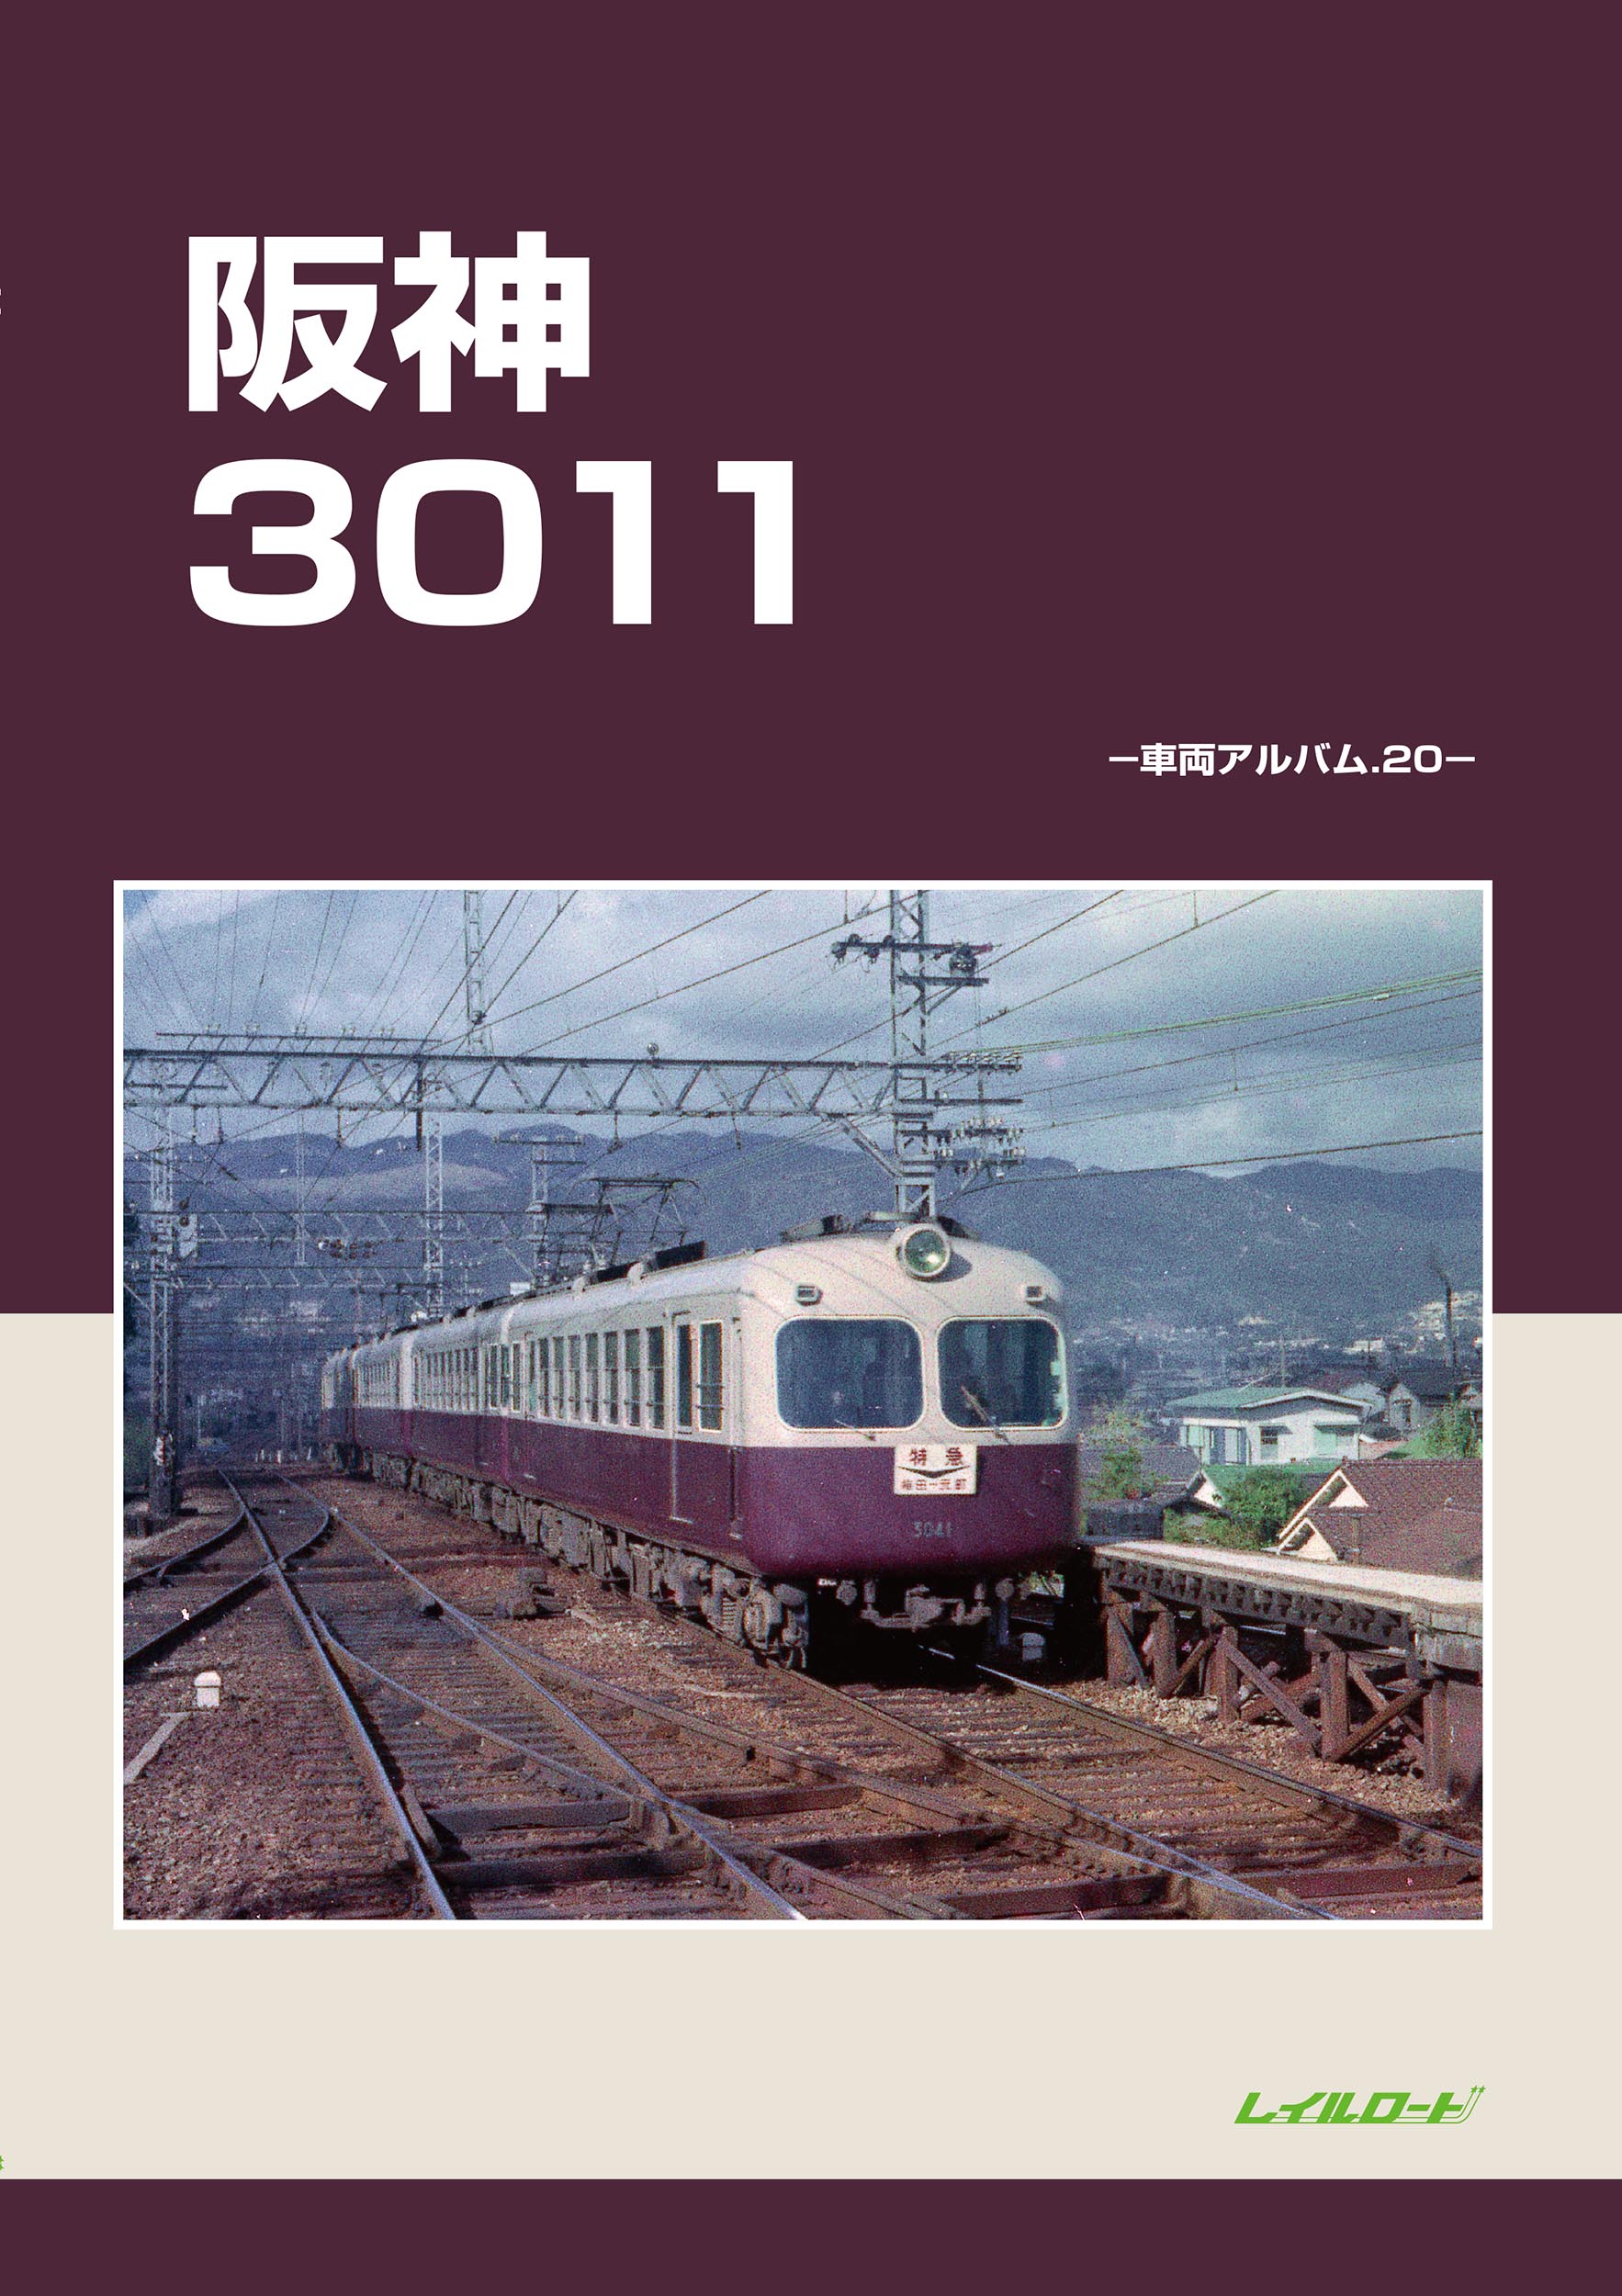 阪神3011の商品画像